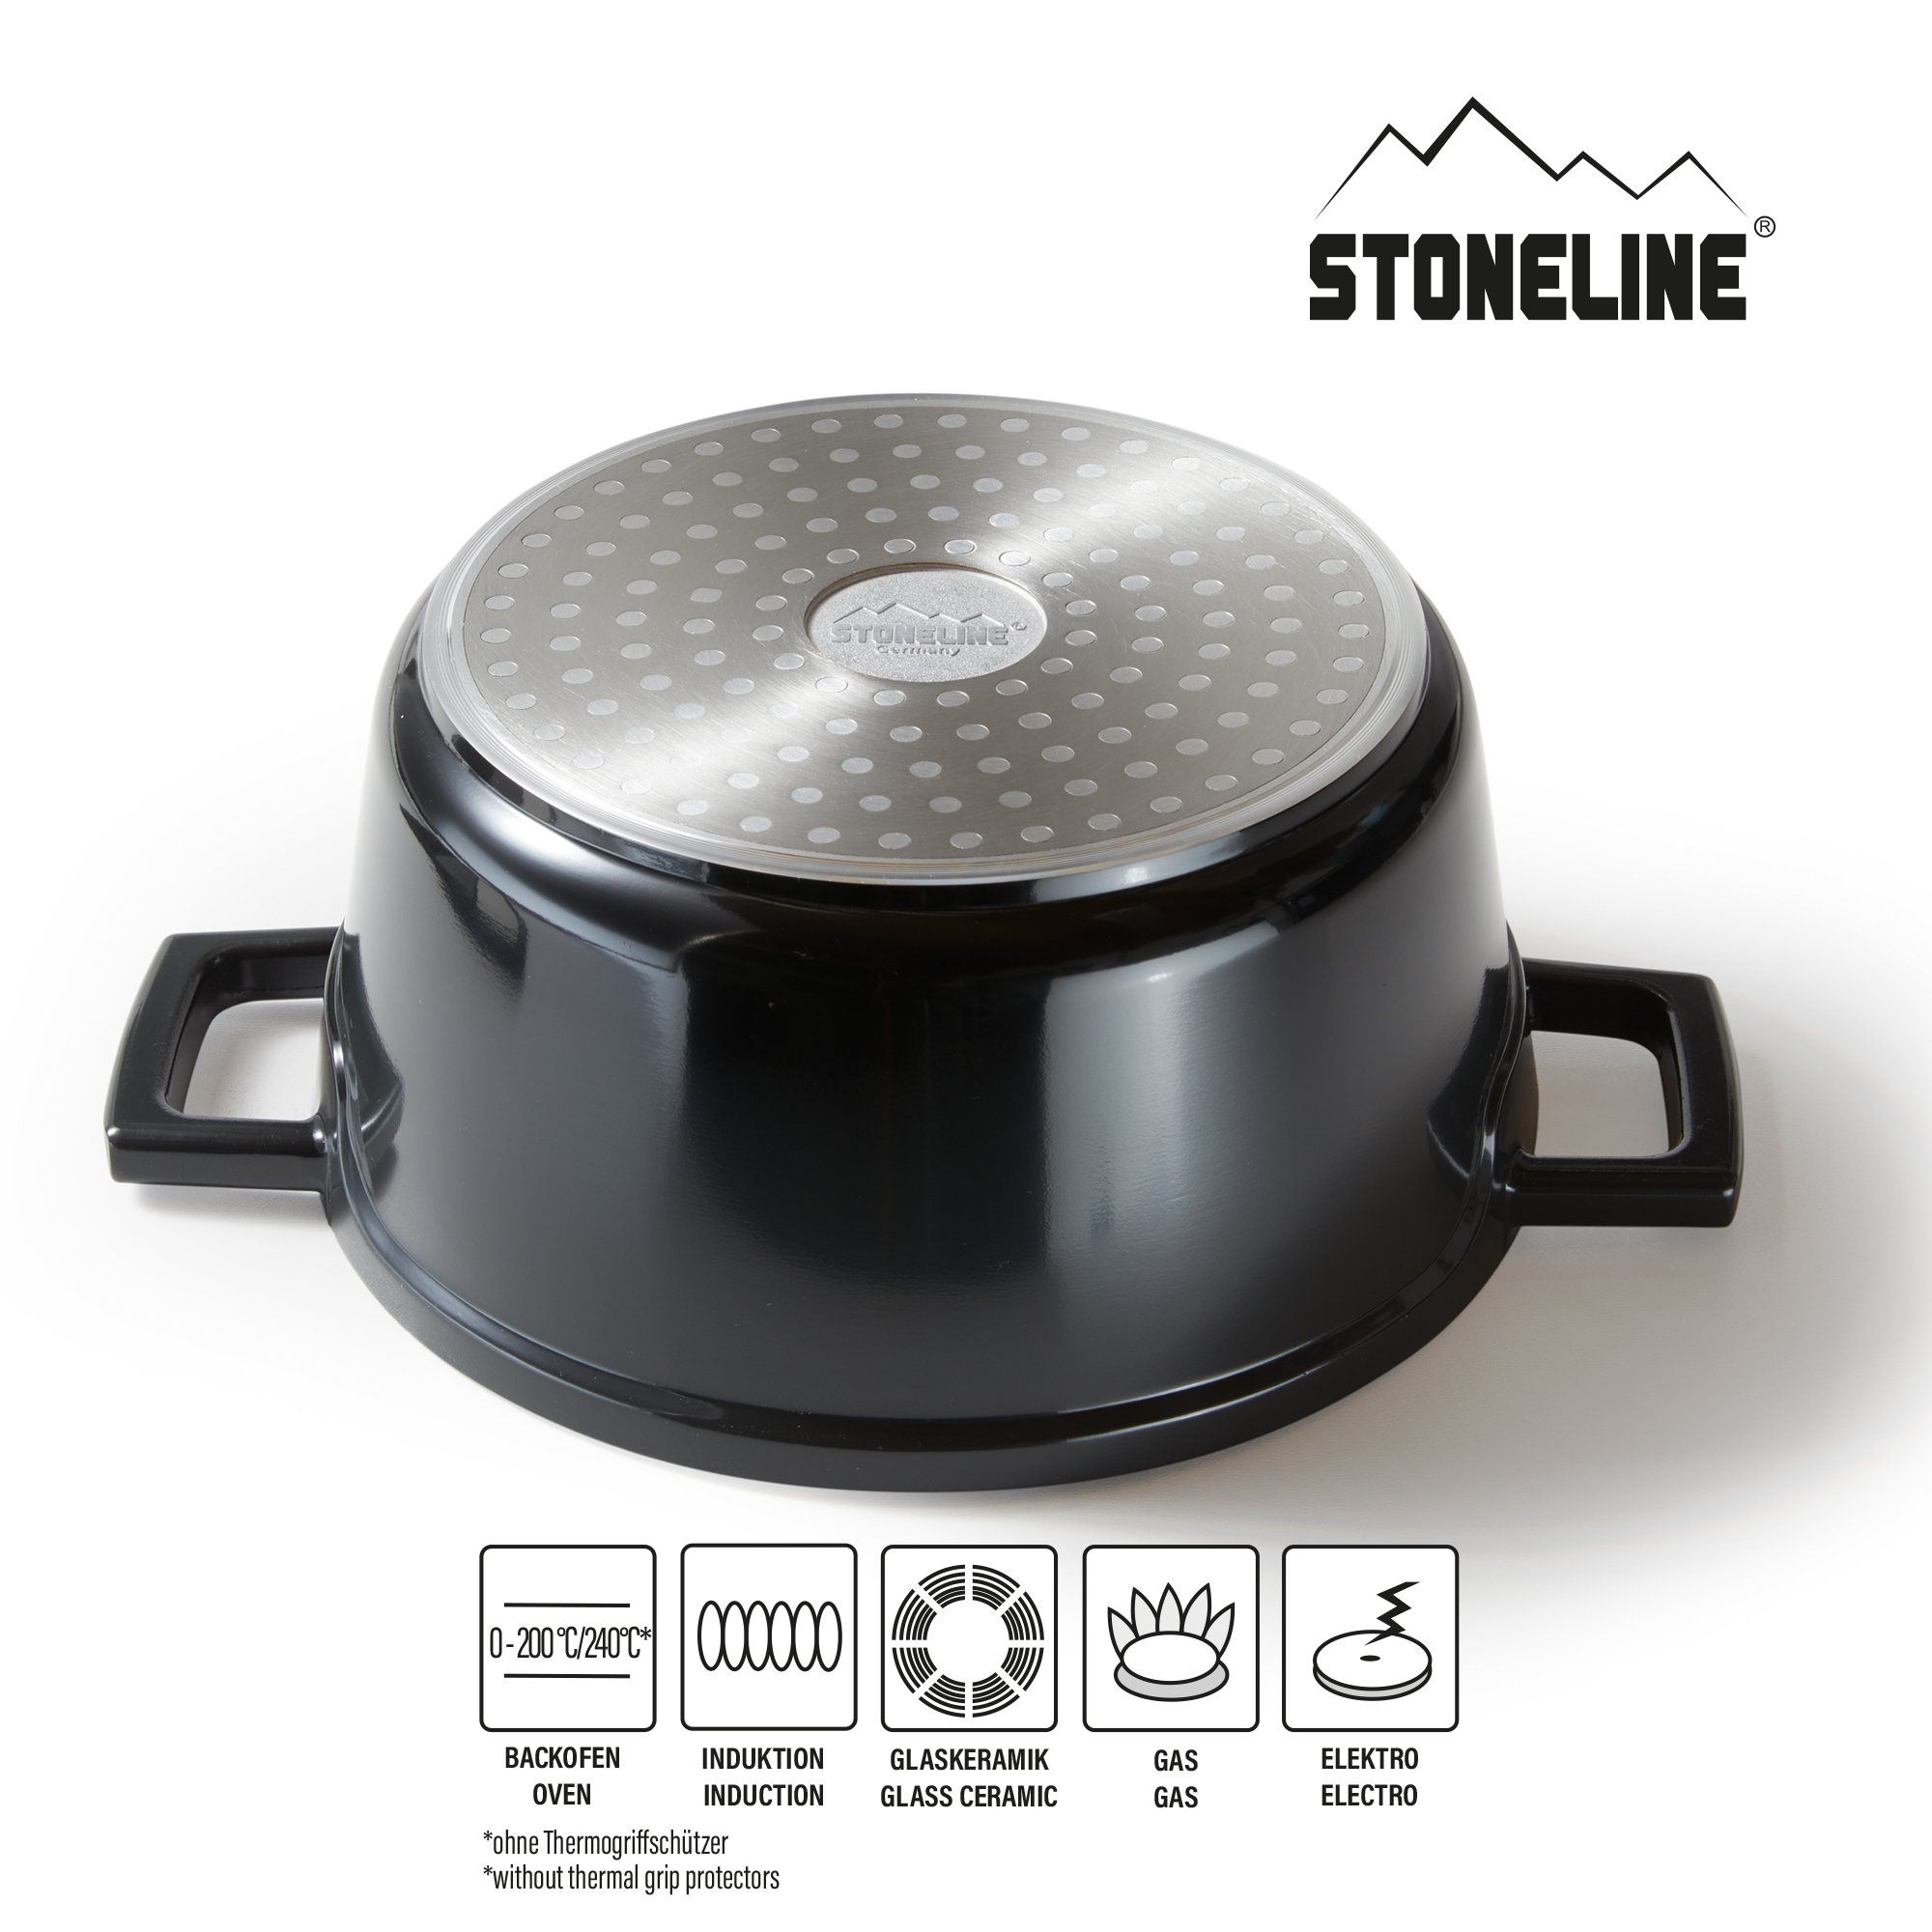 STONELINE® Gourmet asador 20 cm con tapa, apto para horno e inducción, revestimiento antiadherente, negro